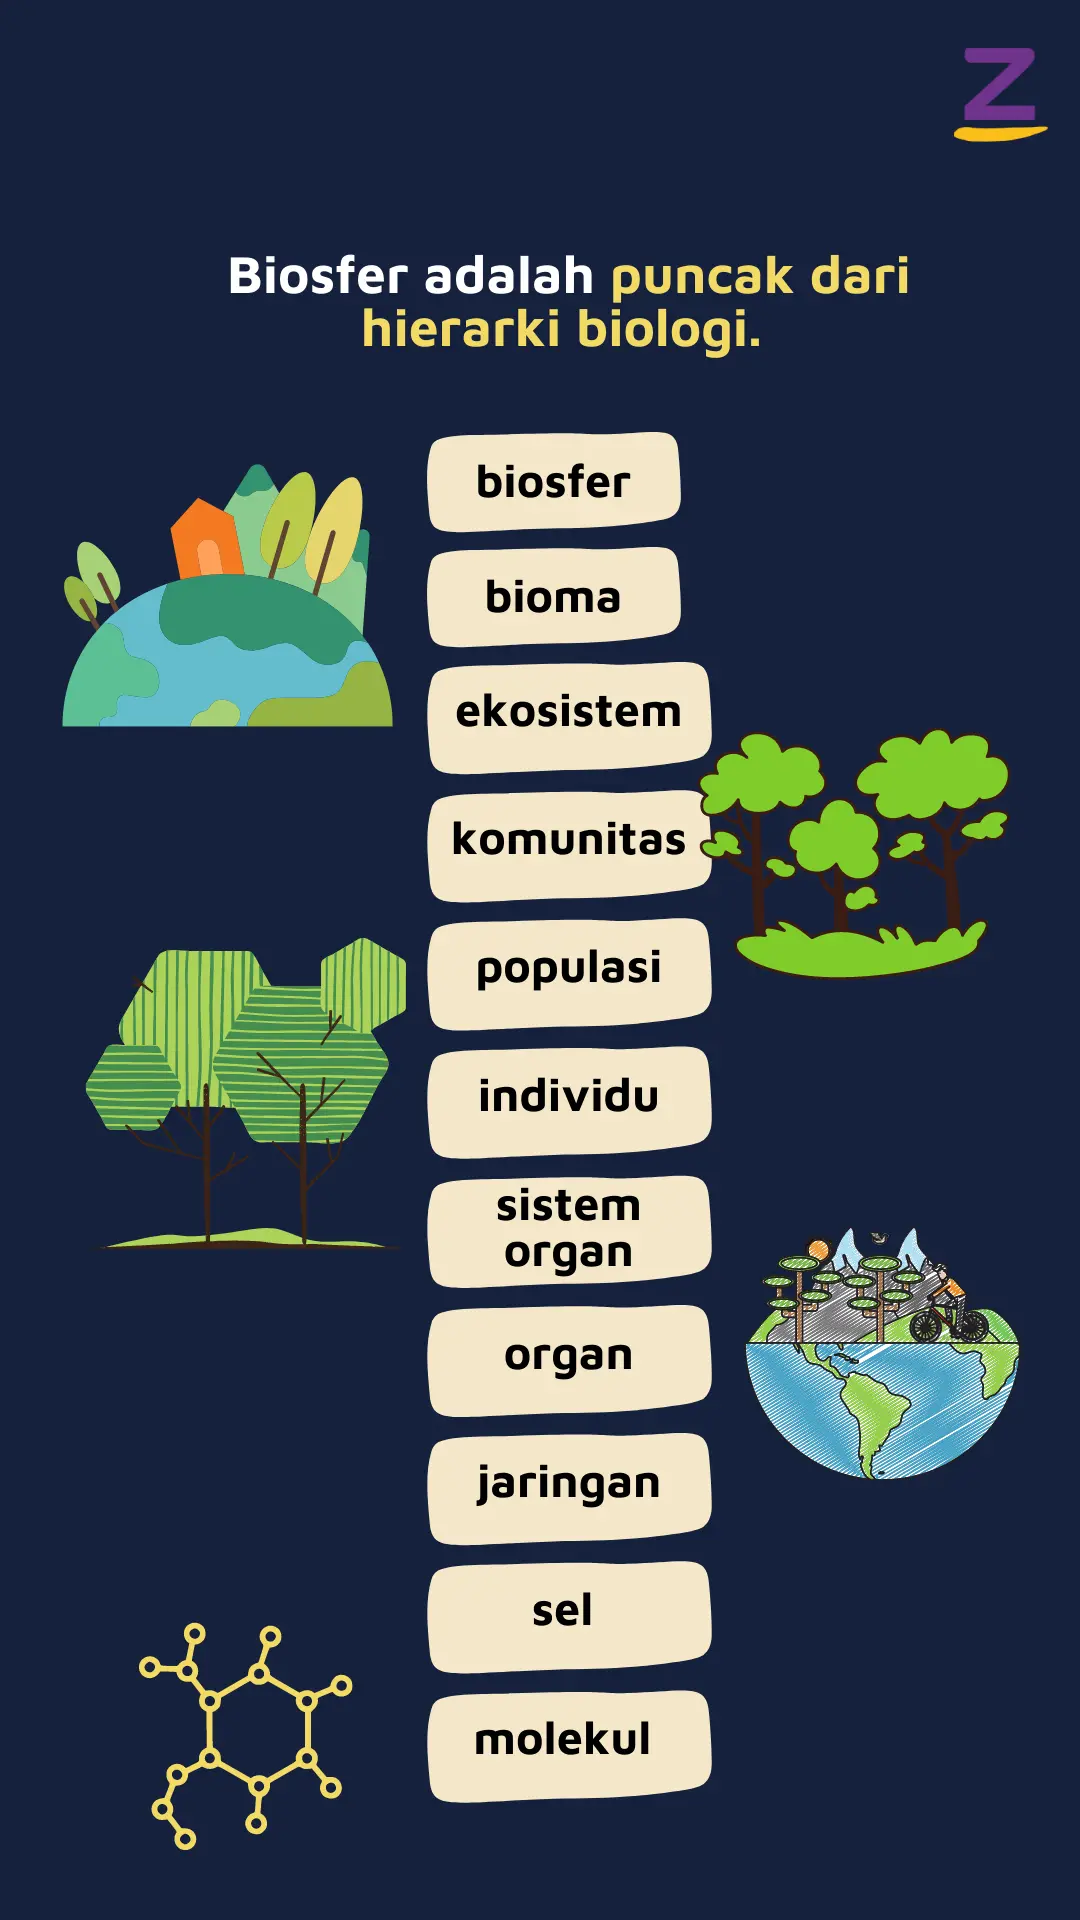 Ilustrasi hierarki biologi: organisme/individu, populasi, komunitas, ekosistem, bioma, dan paling tinggi biosfer.